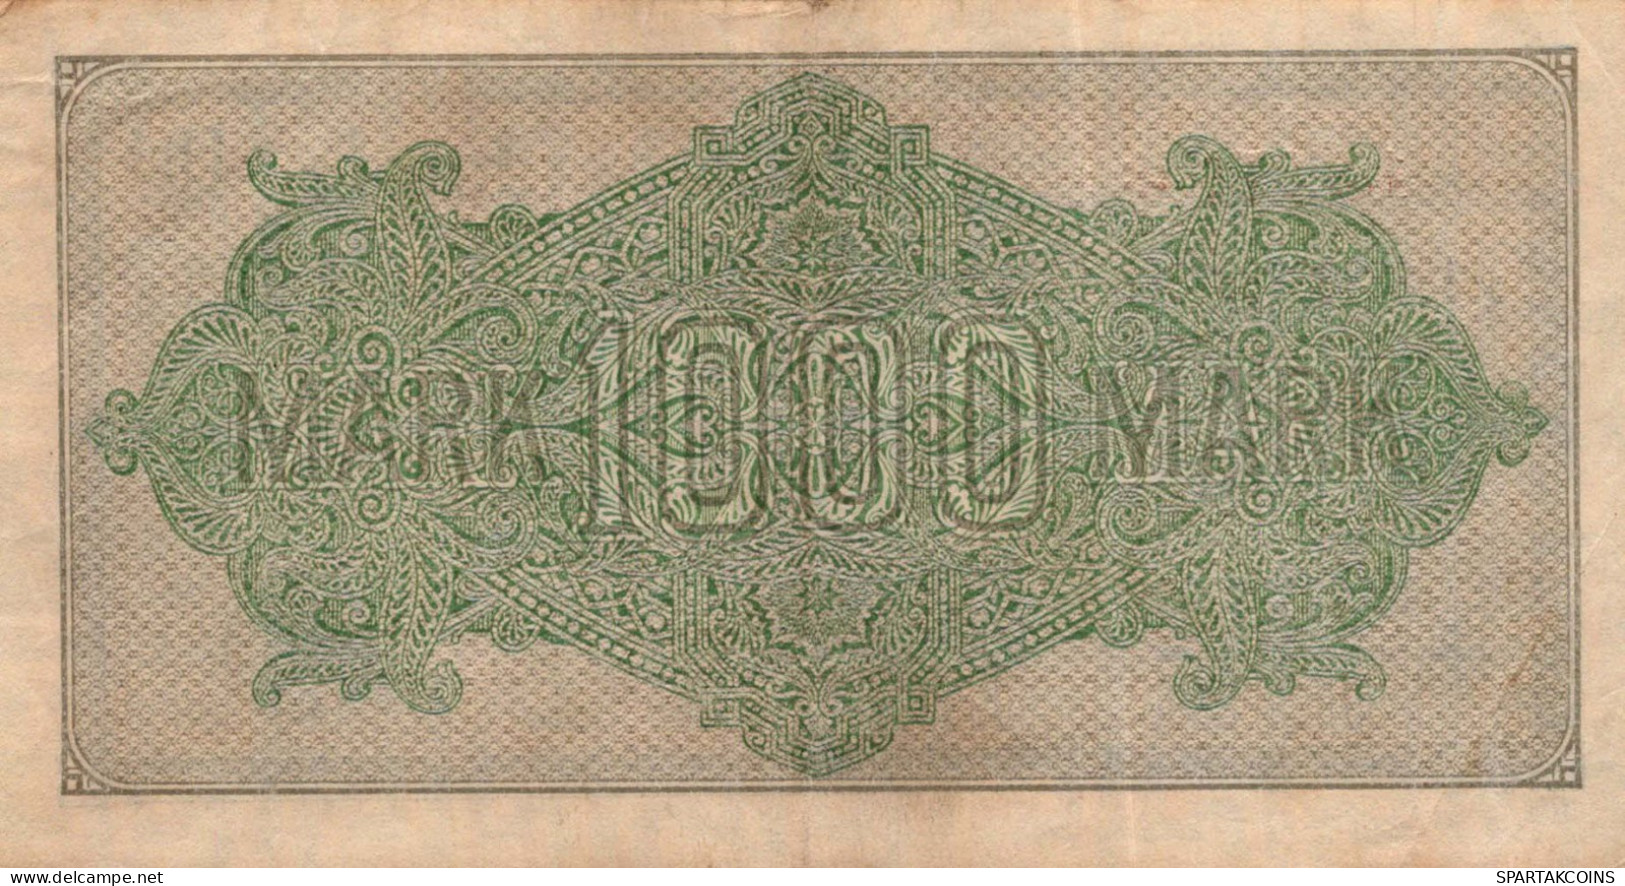 1000 MARK 1922 Stadt BERLIN DEUTSCHLAND Papiergeld Banknote #PL409 - [11] Local Banknote Issues